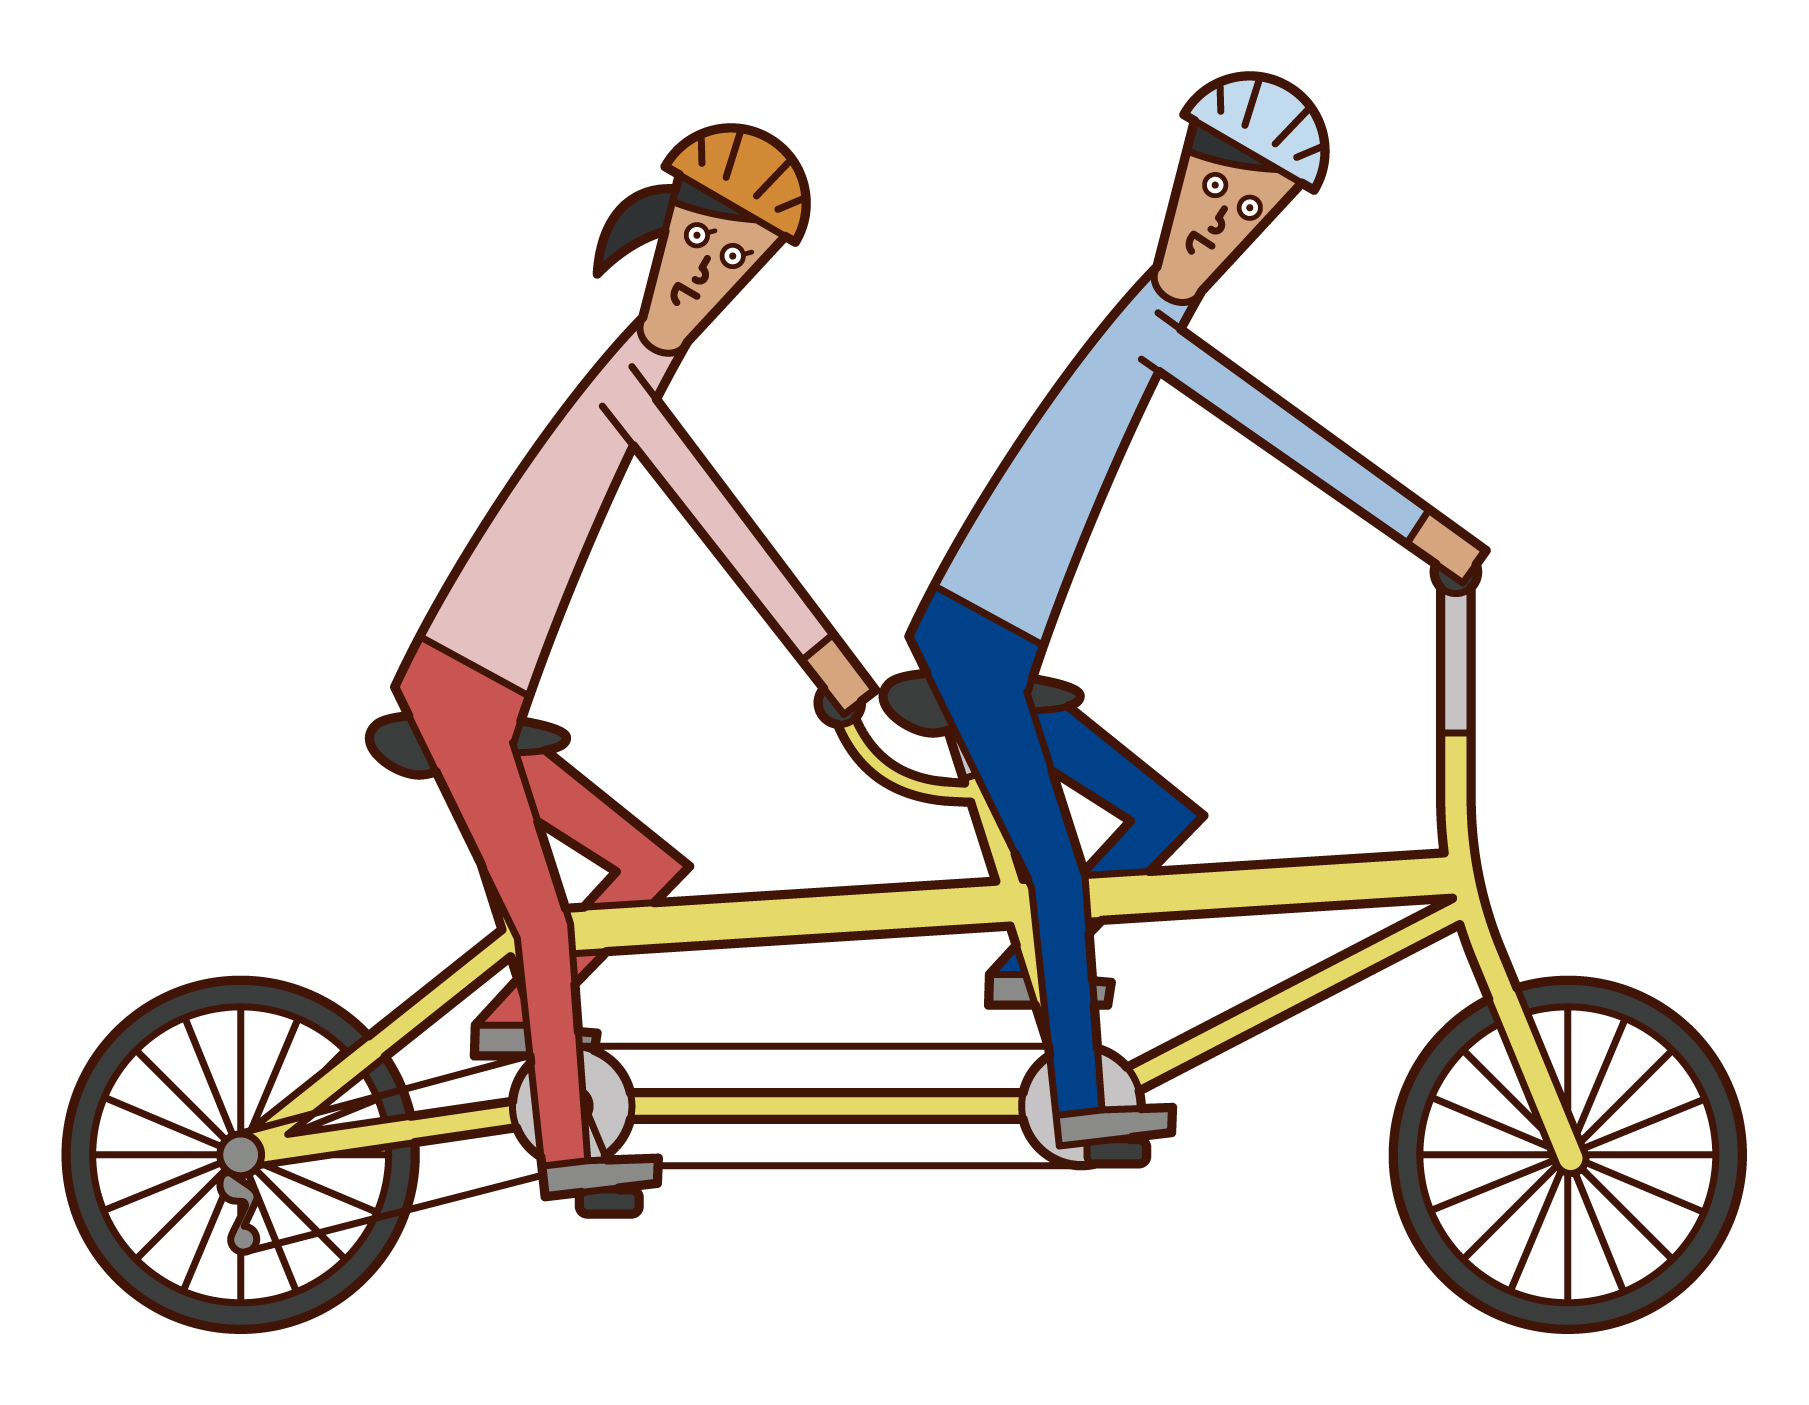 Illustration of tandem bike rides